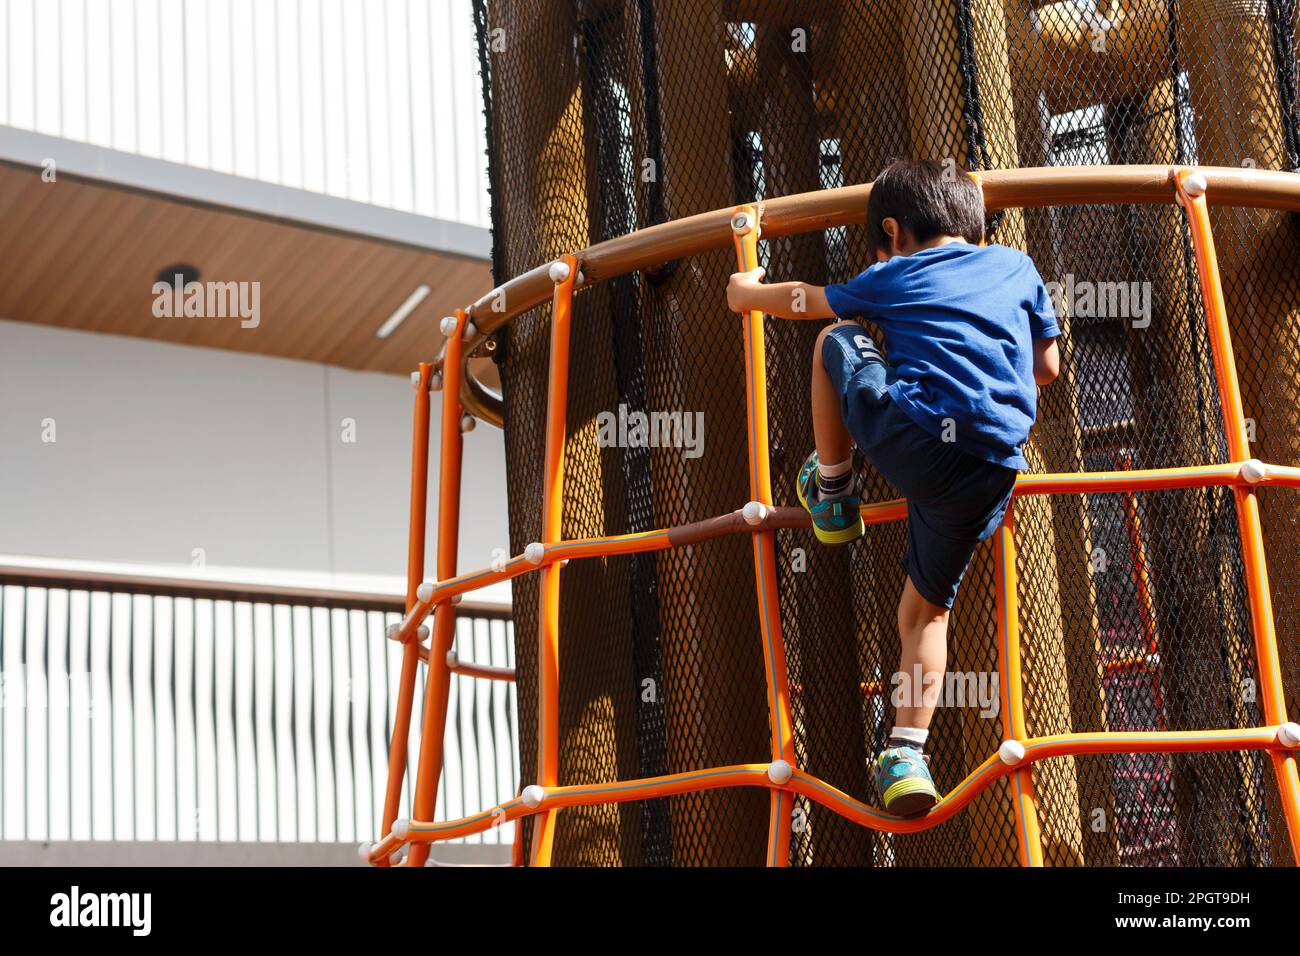 bon garçon asiatique sur le terrain de jeu. le week-end, un garçon monte sur l'échelle dans l'aire de jeux publique du parc municipal. Banque D'Images